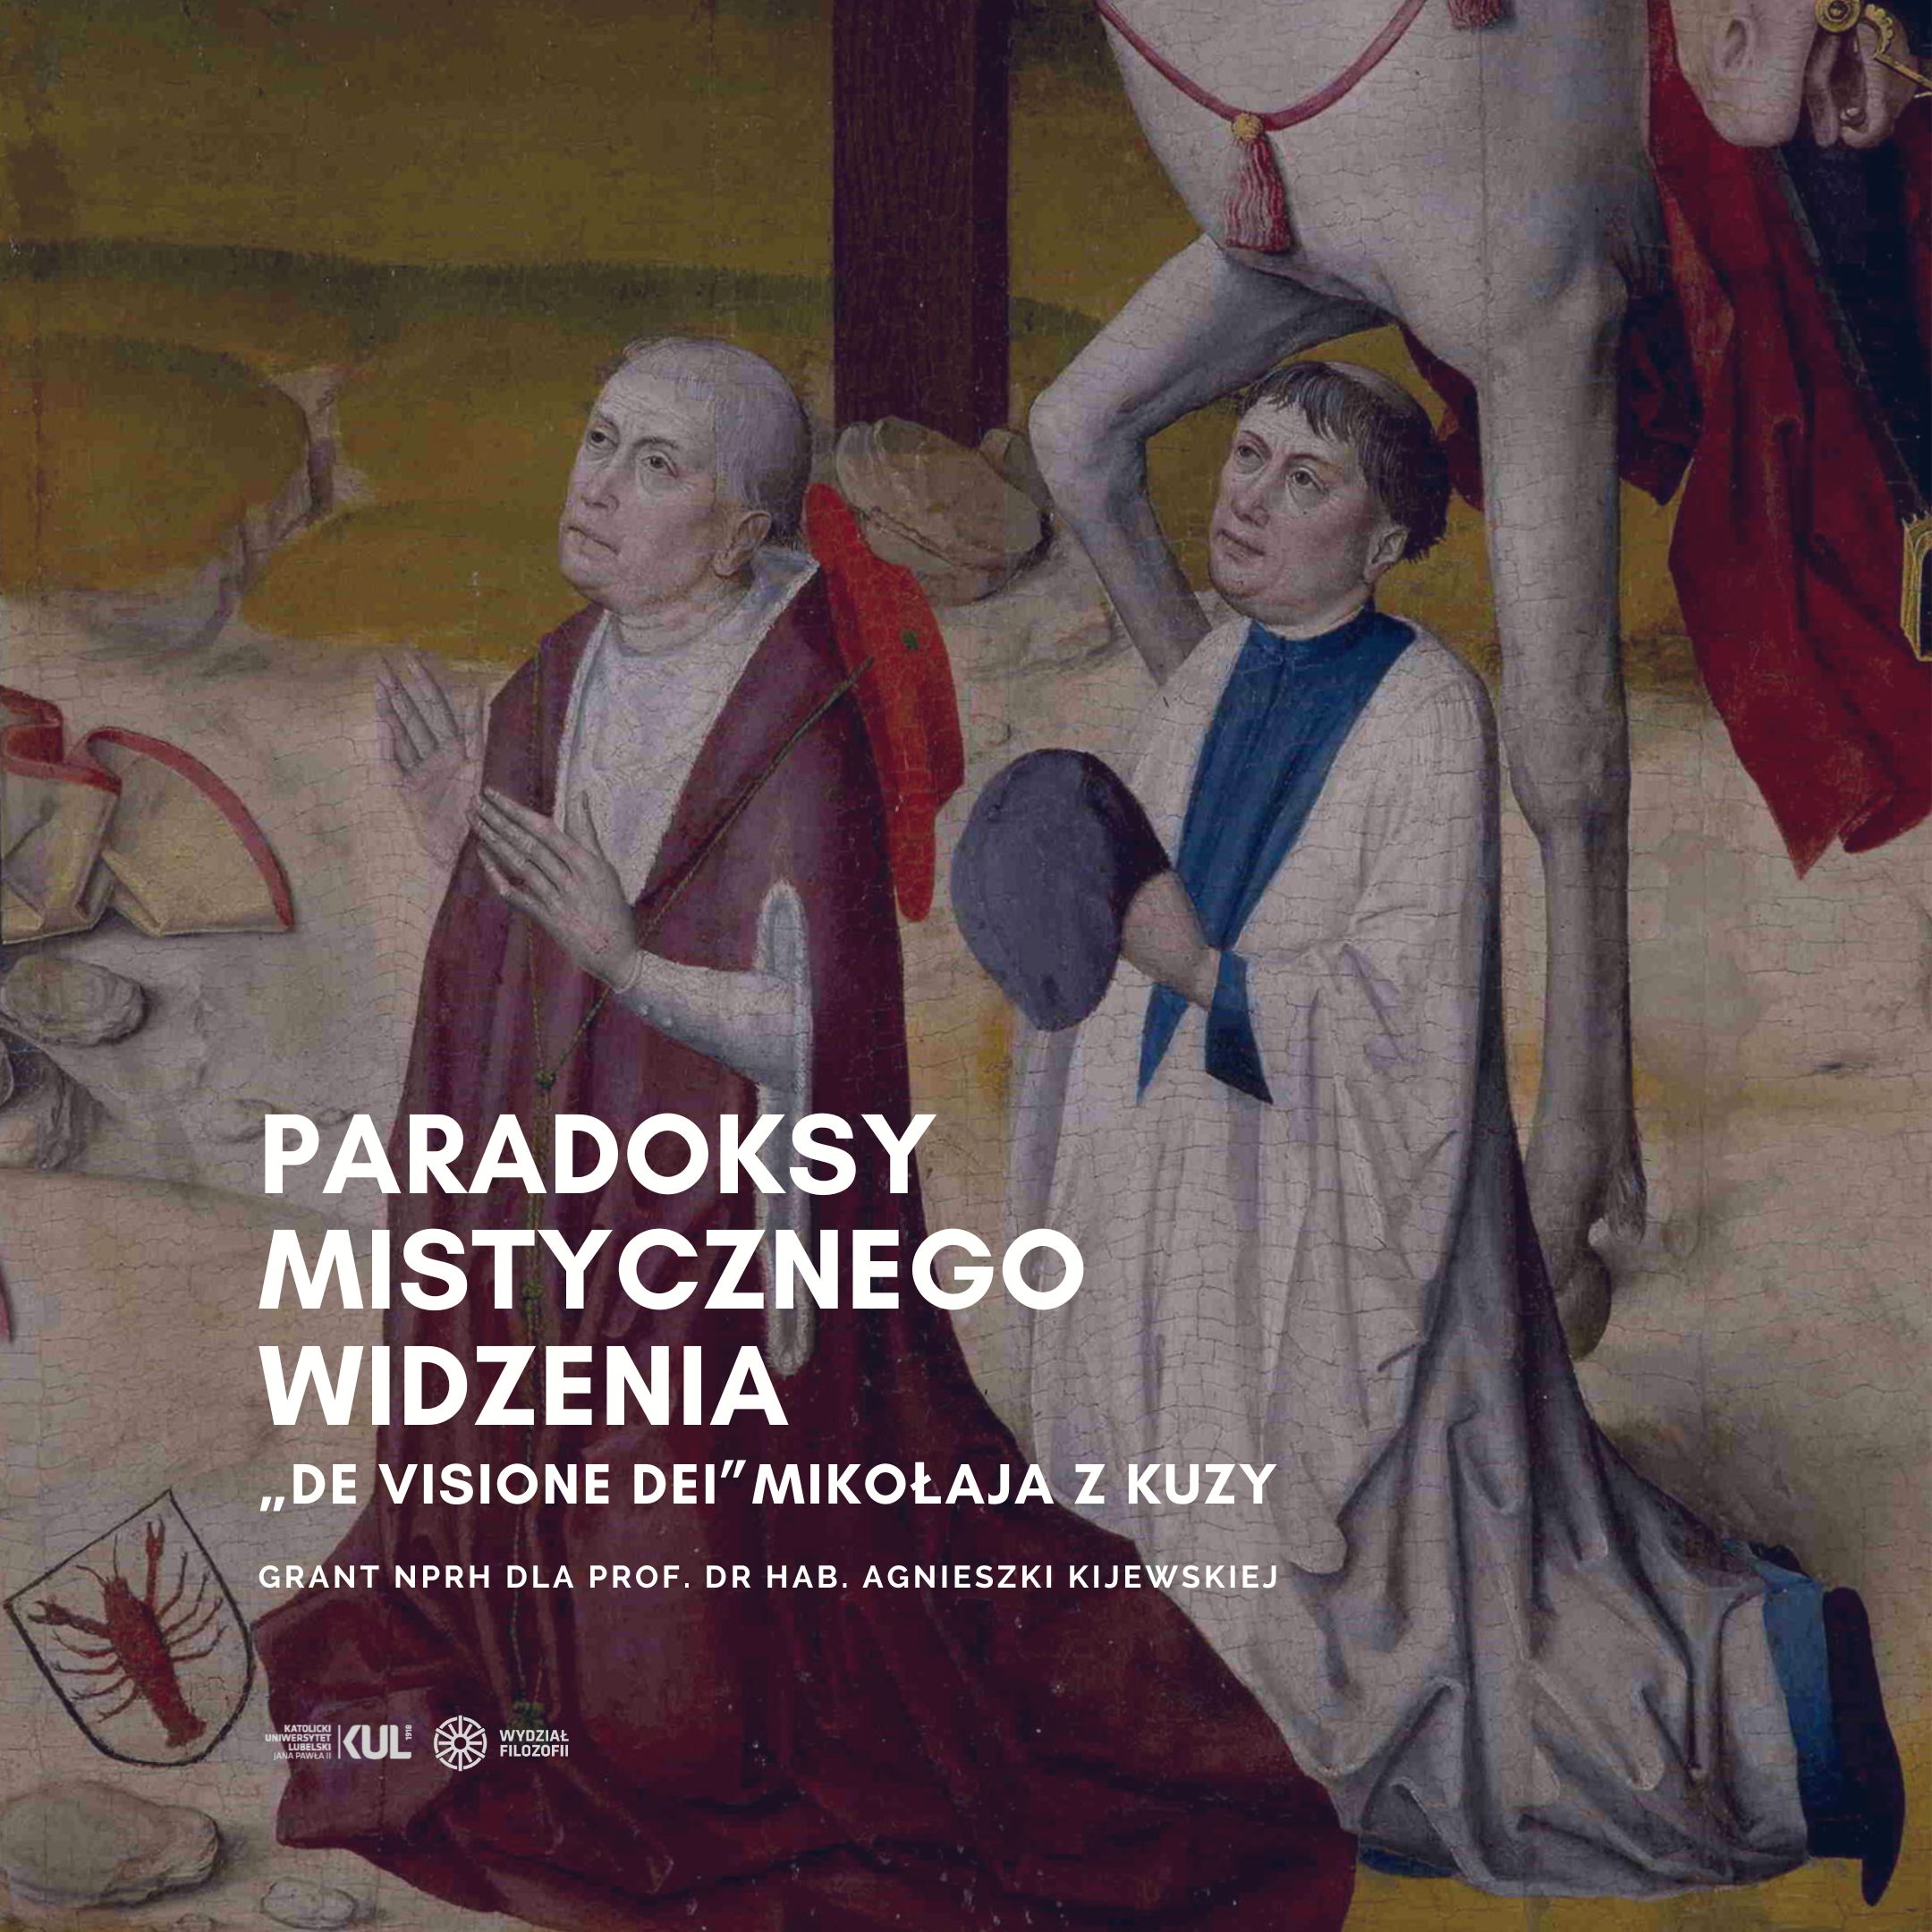 Paradoksy mistycznego widzenia: „De visione Dei” Mikołaja z Kuzy - Grant NPRH dla prof. dr hab. Agnieszki Kijewskiej